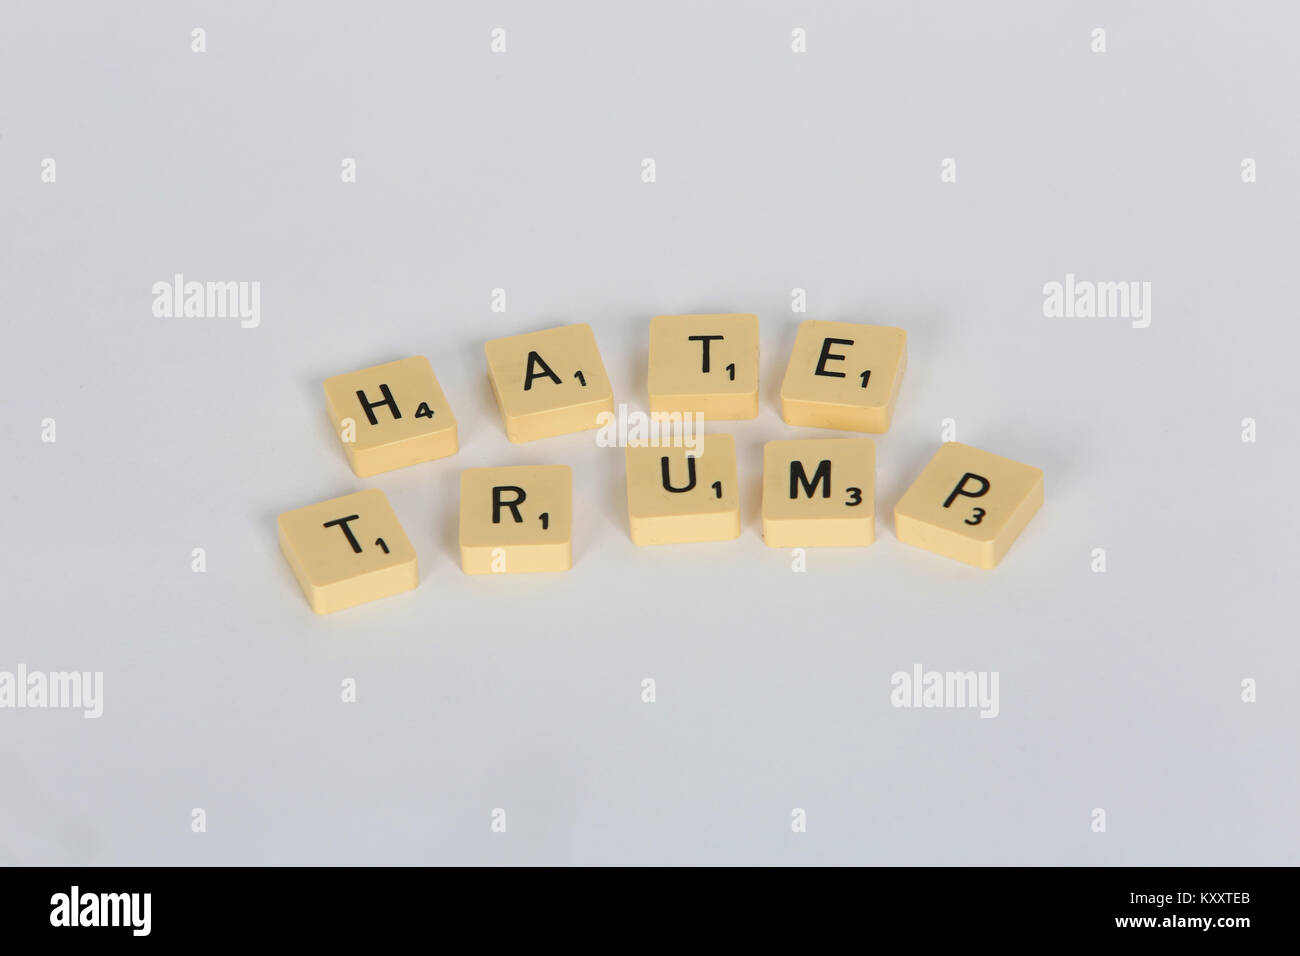 Vieux Scrabble letters spelling out 'Love' et 'Trump Trump haine' sur un fond blanc, Londres, Royaume-Uni. Banque D'Images